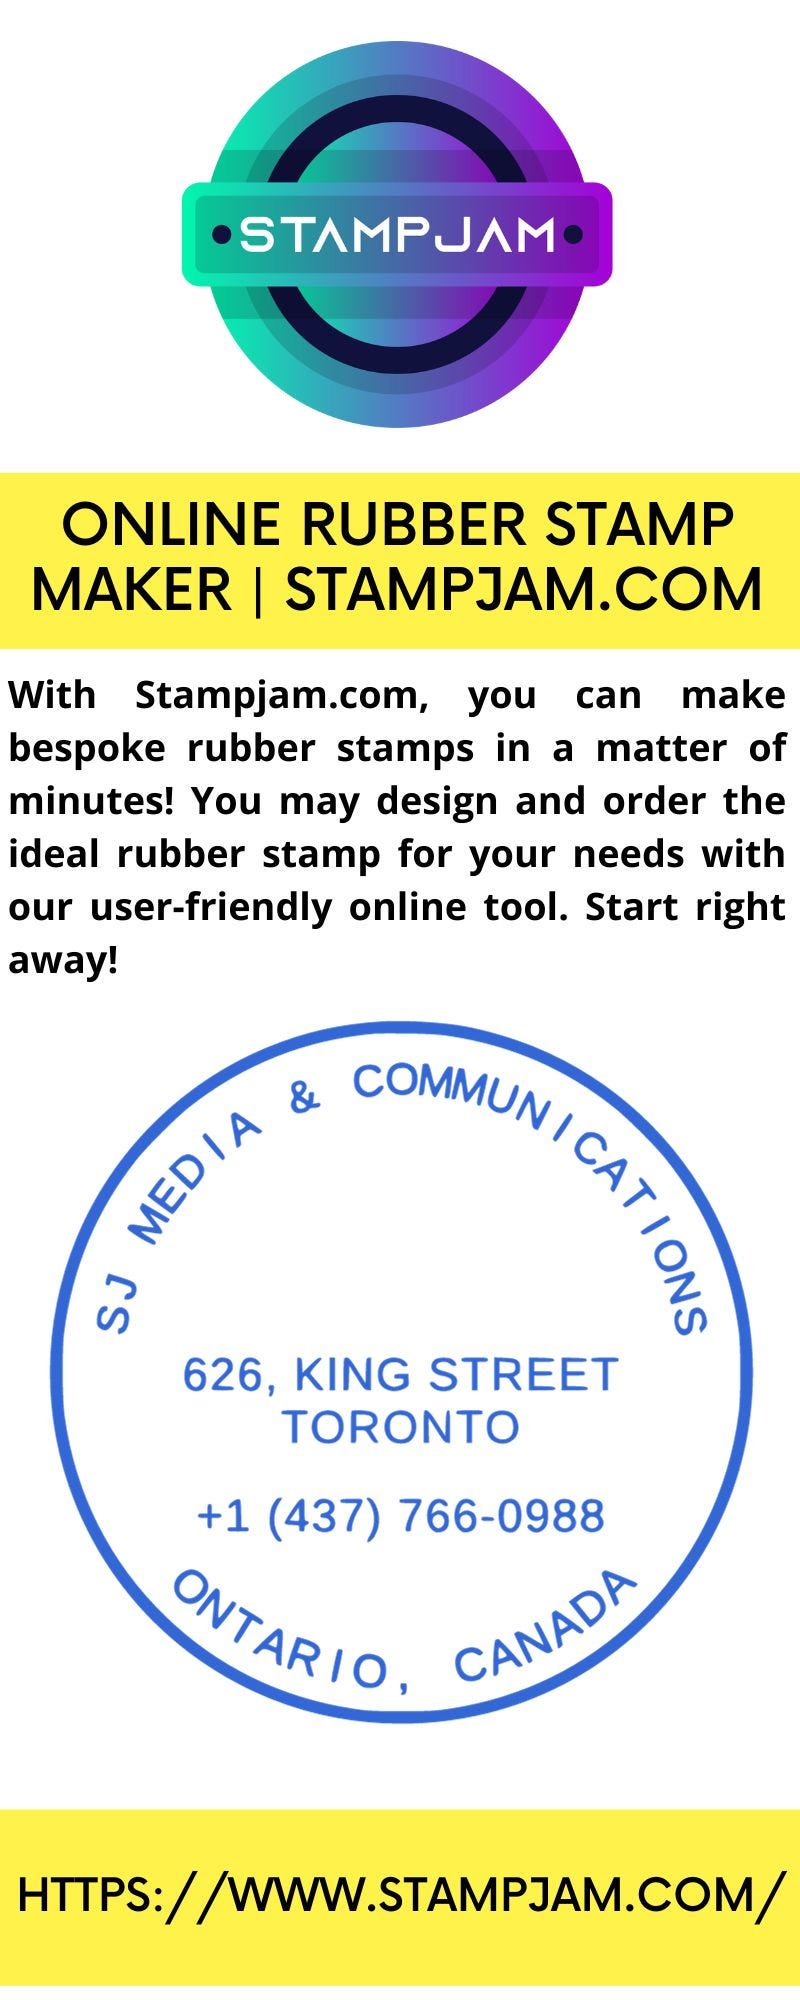 Online Rubber Stamp Maker | Stampjam.com - Stampjam - Medium